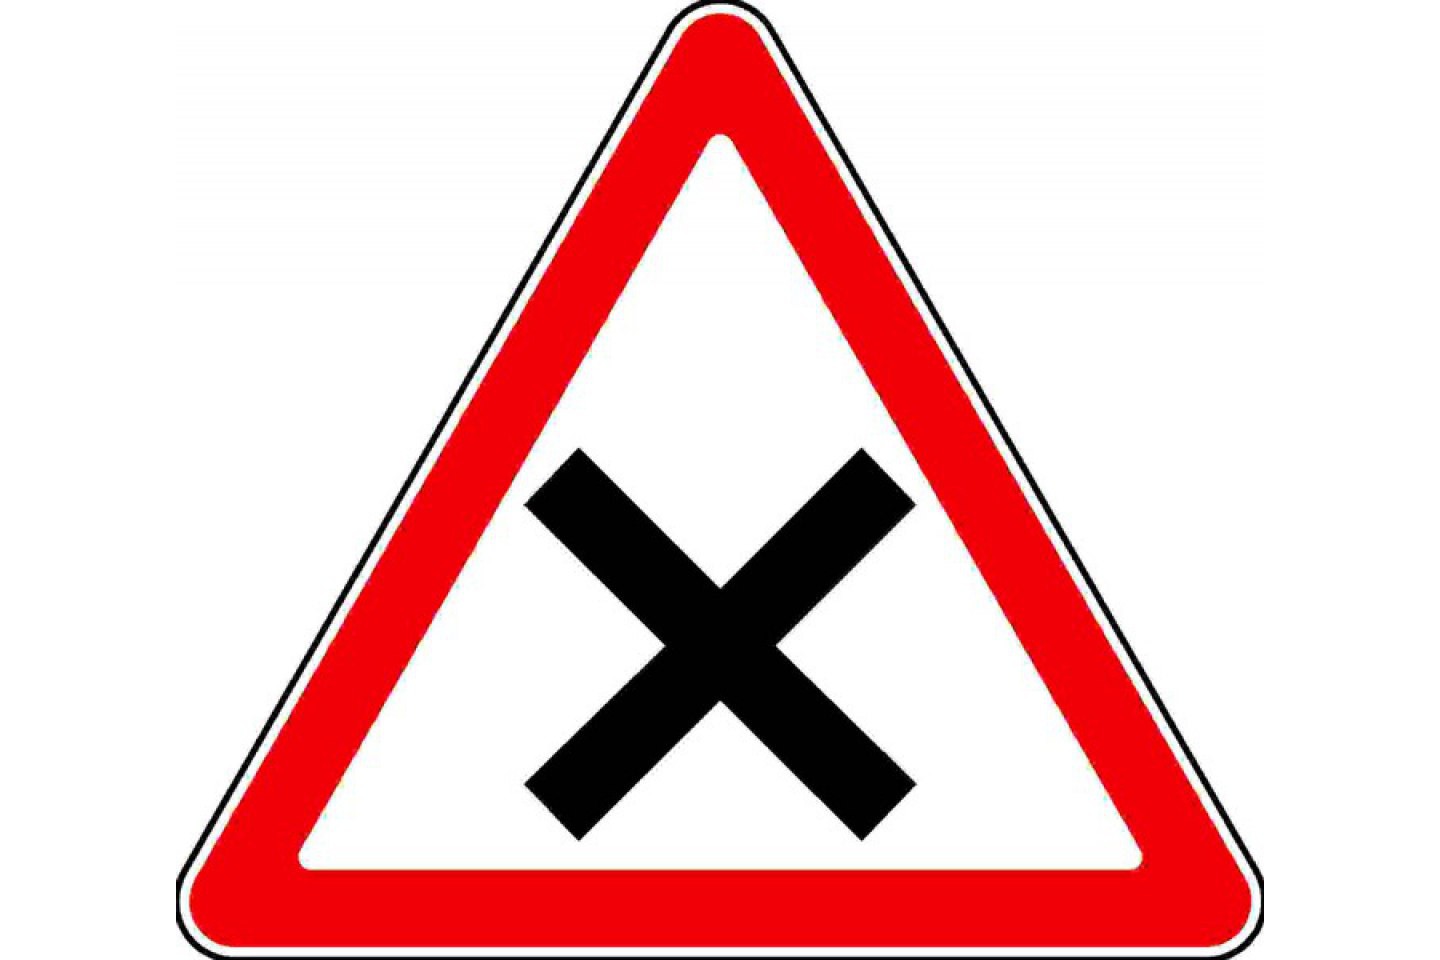 Дорожный знак 1.6 "Пересечение равнозначных дорог"